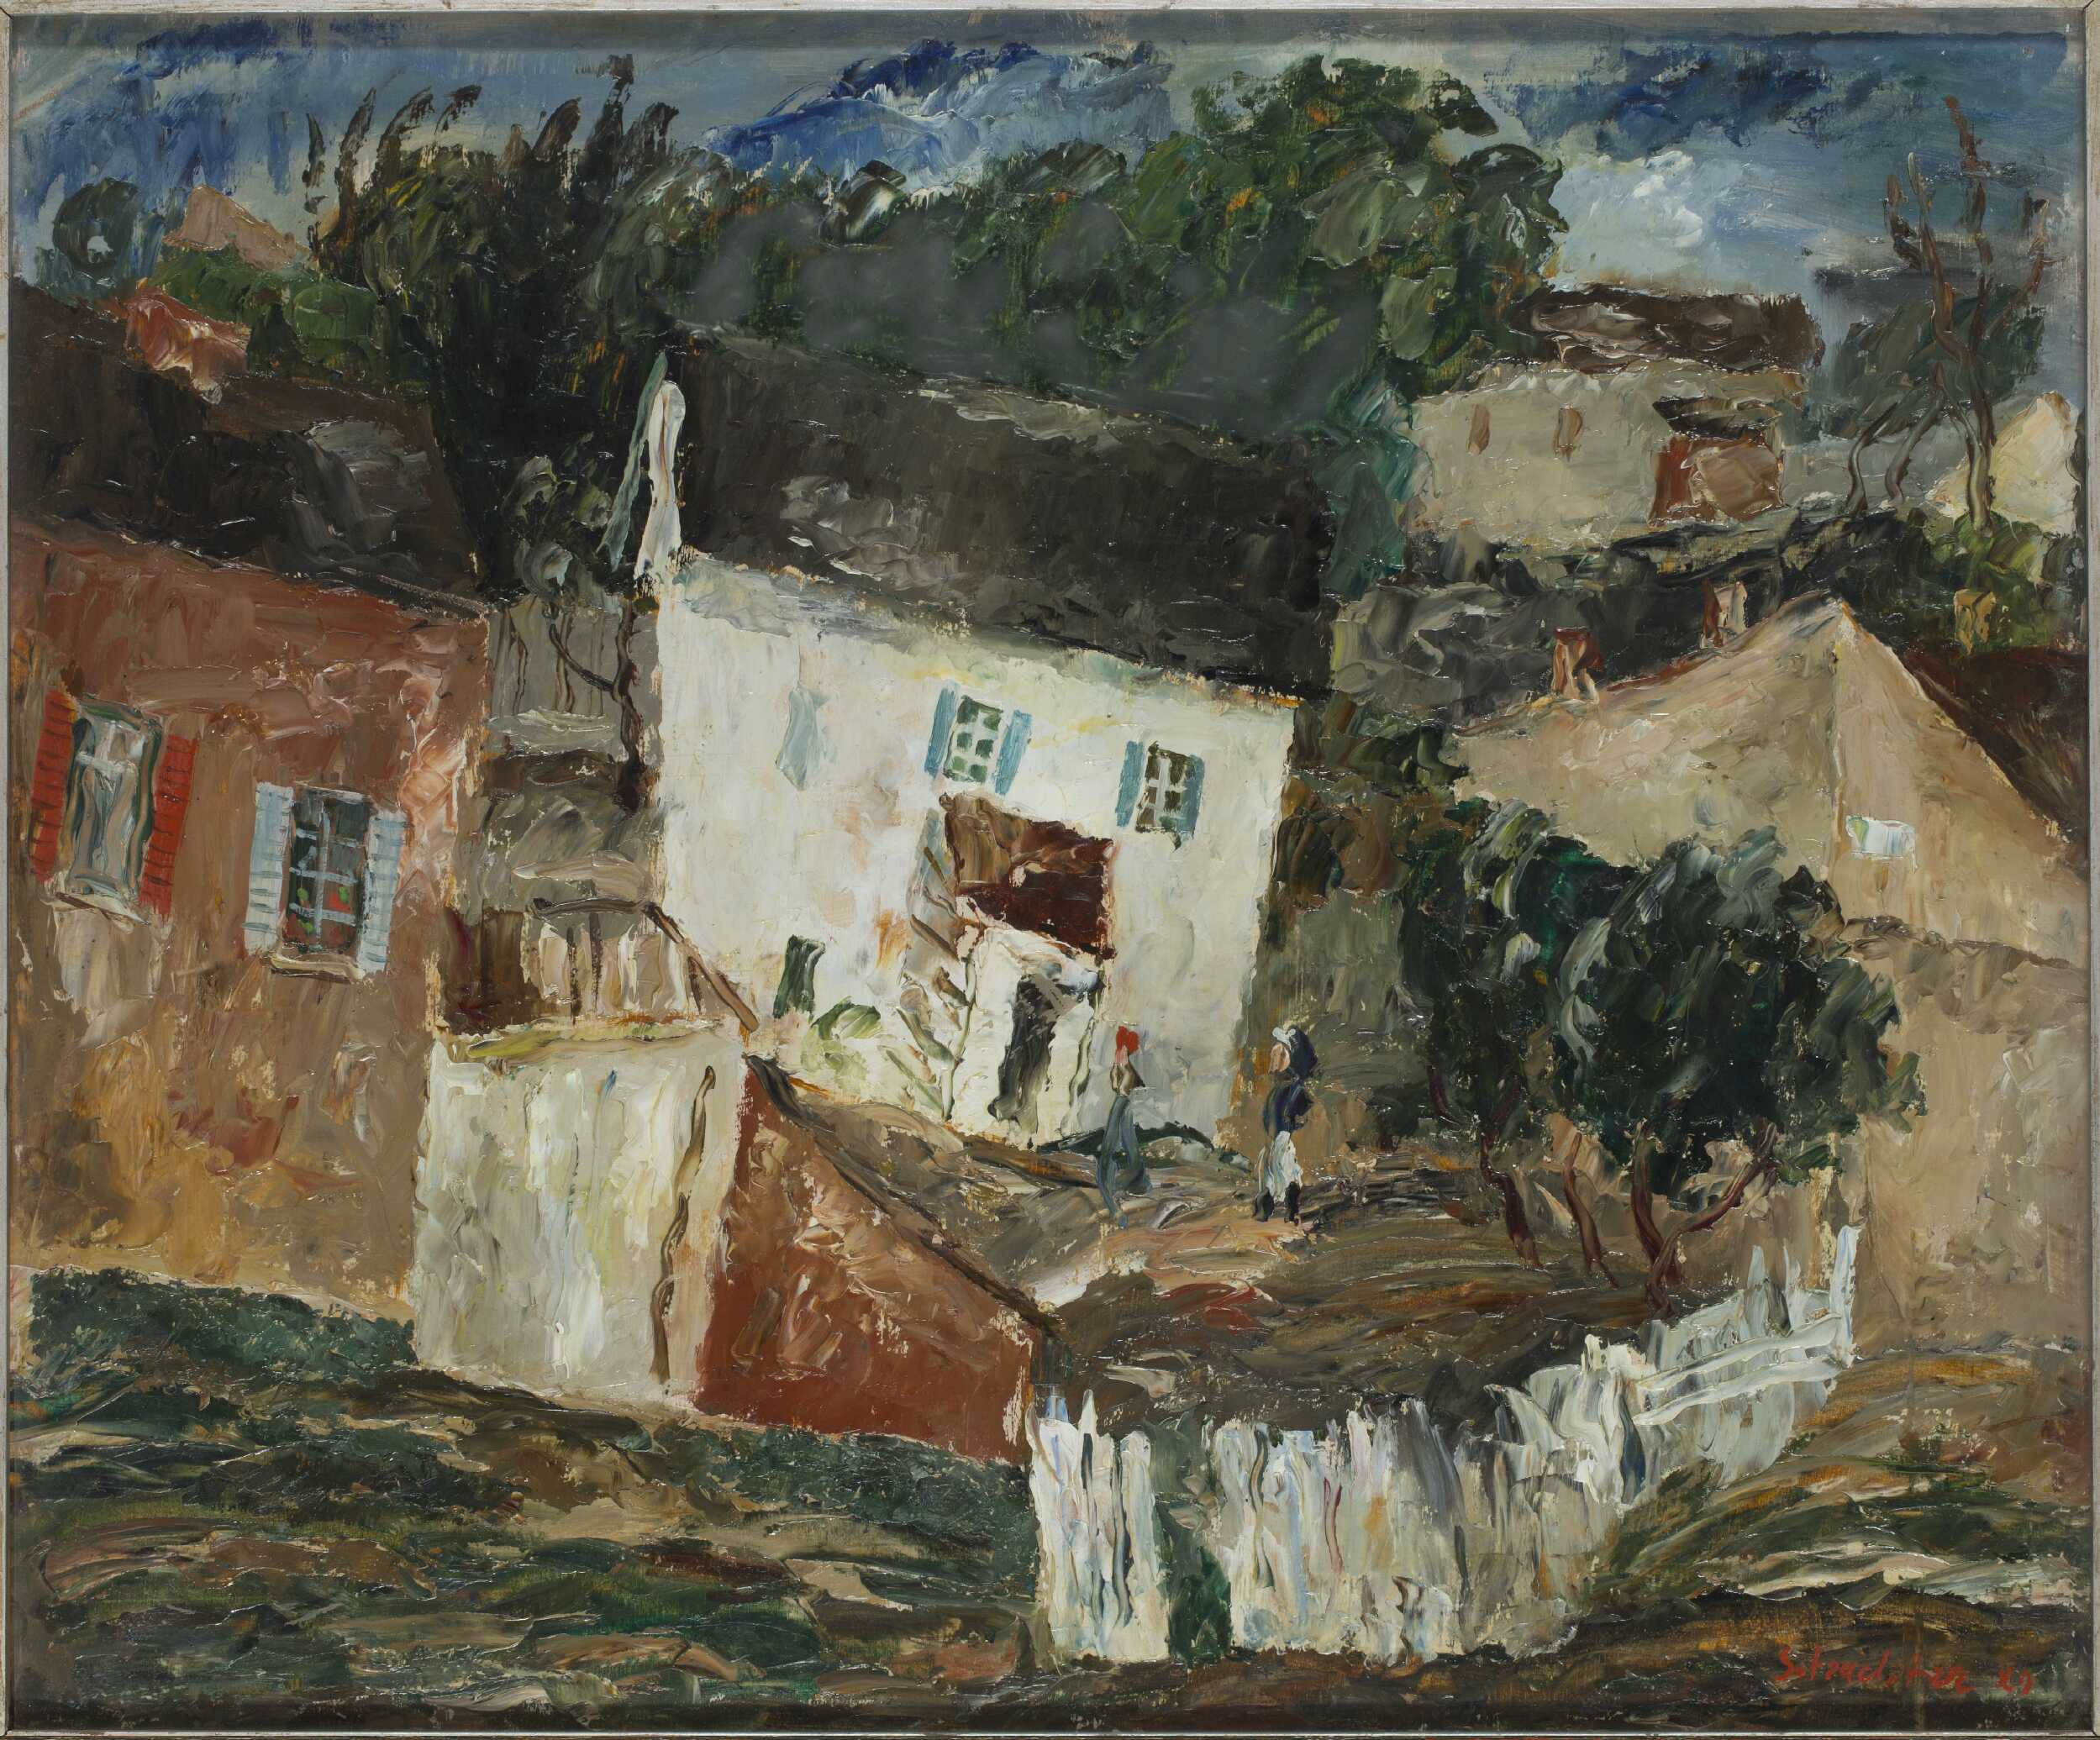 카지미에쉬 돌니(Kazimierz Dolny)의 풍경 by Symche Trachter - 1929 - 50 x 60 cm 